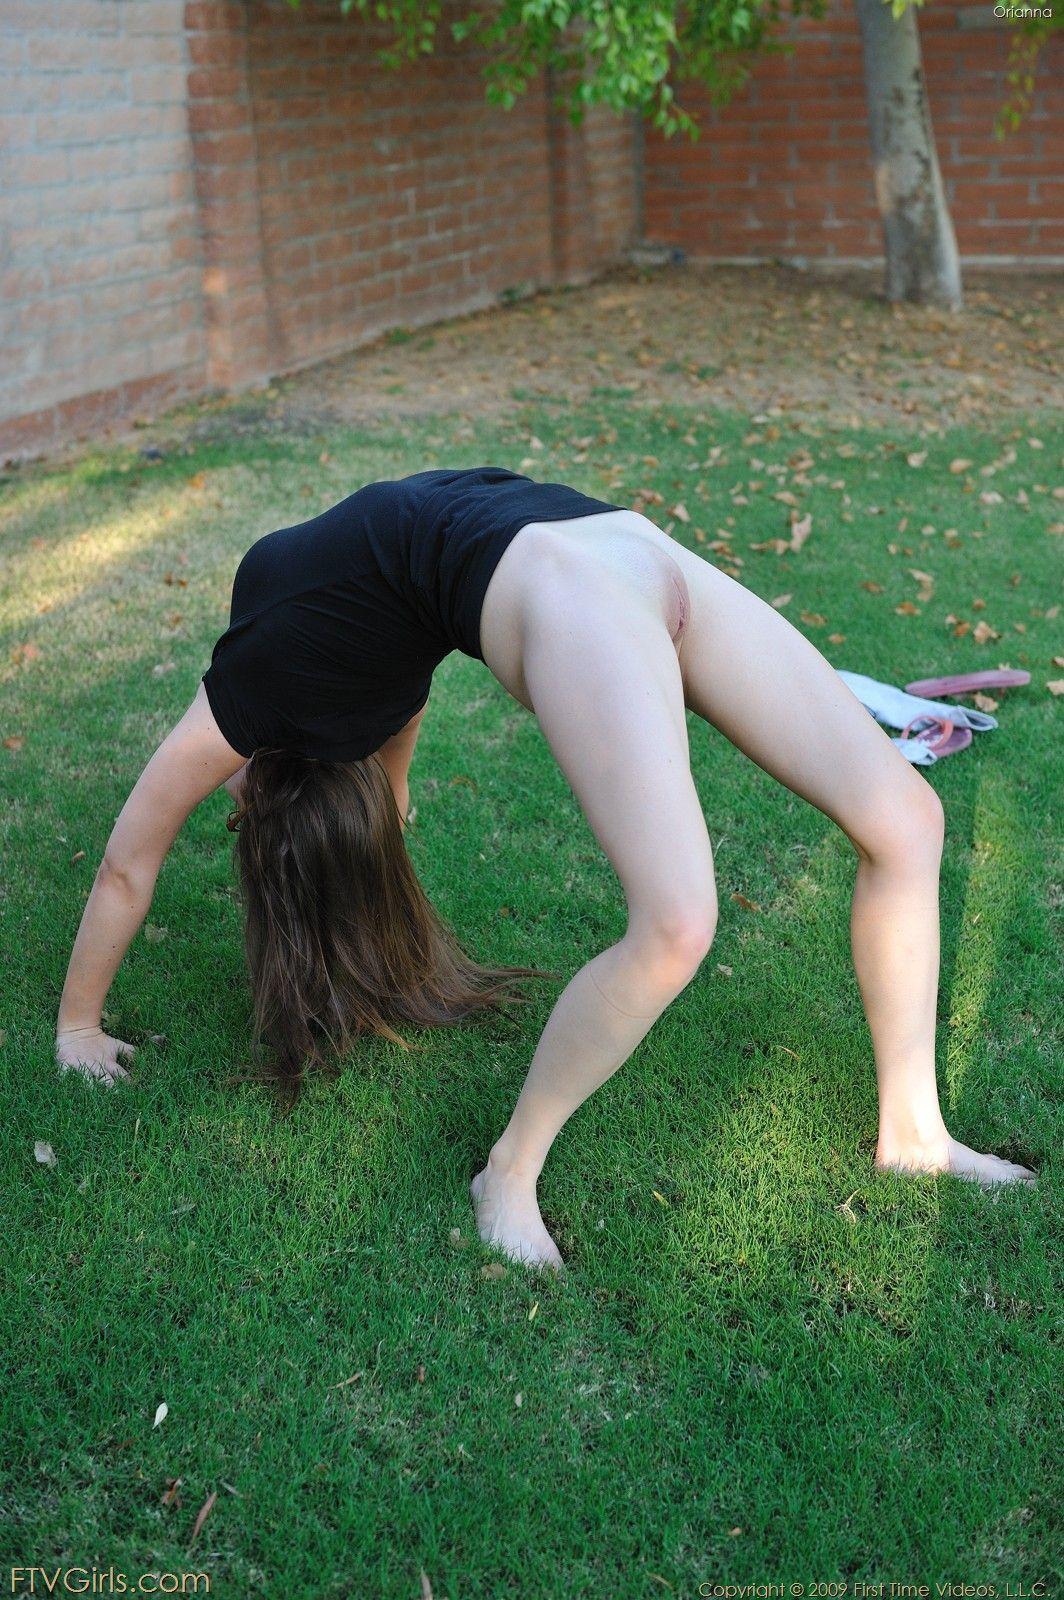 Fotos de la chica ftv orianna desnudandose en un parque publico
 #59810252